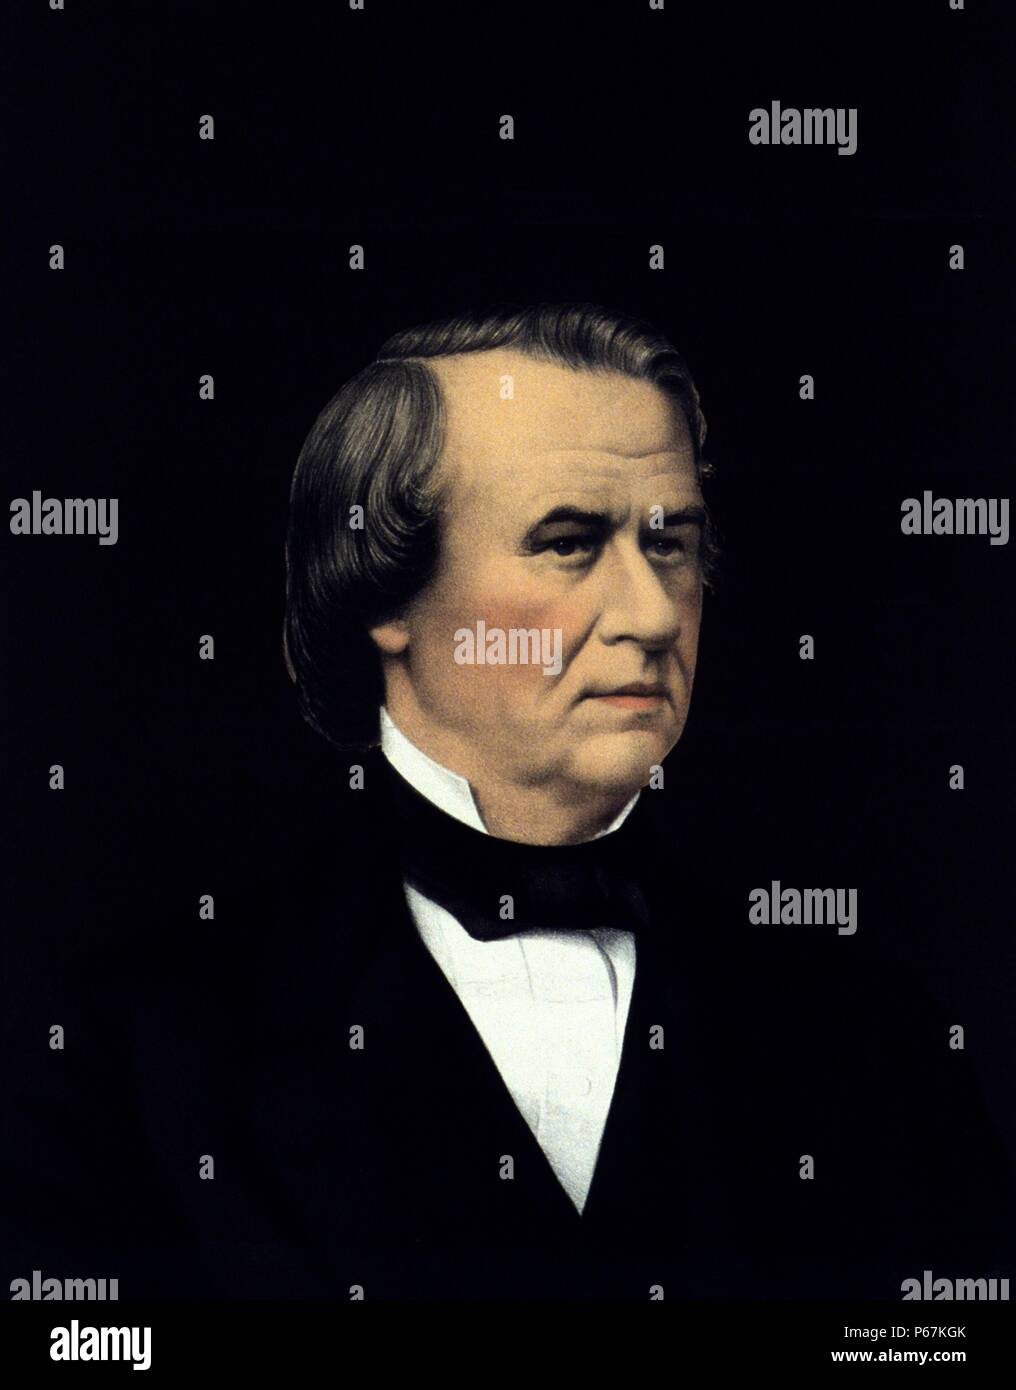 Le président Andrew Johnson. Johnson a été le 17e président des États-Unis, de 1865 à 1869. Il est devenu président en tant que Vice-président Abraham Lincoln au moment de l'assassinat de Lincoln. Banque D'Images